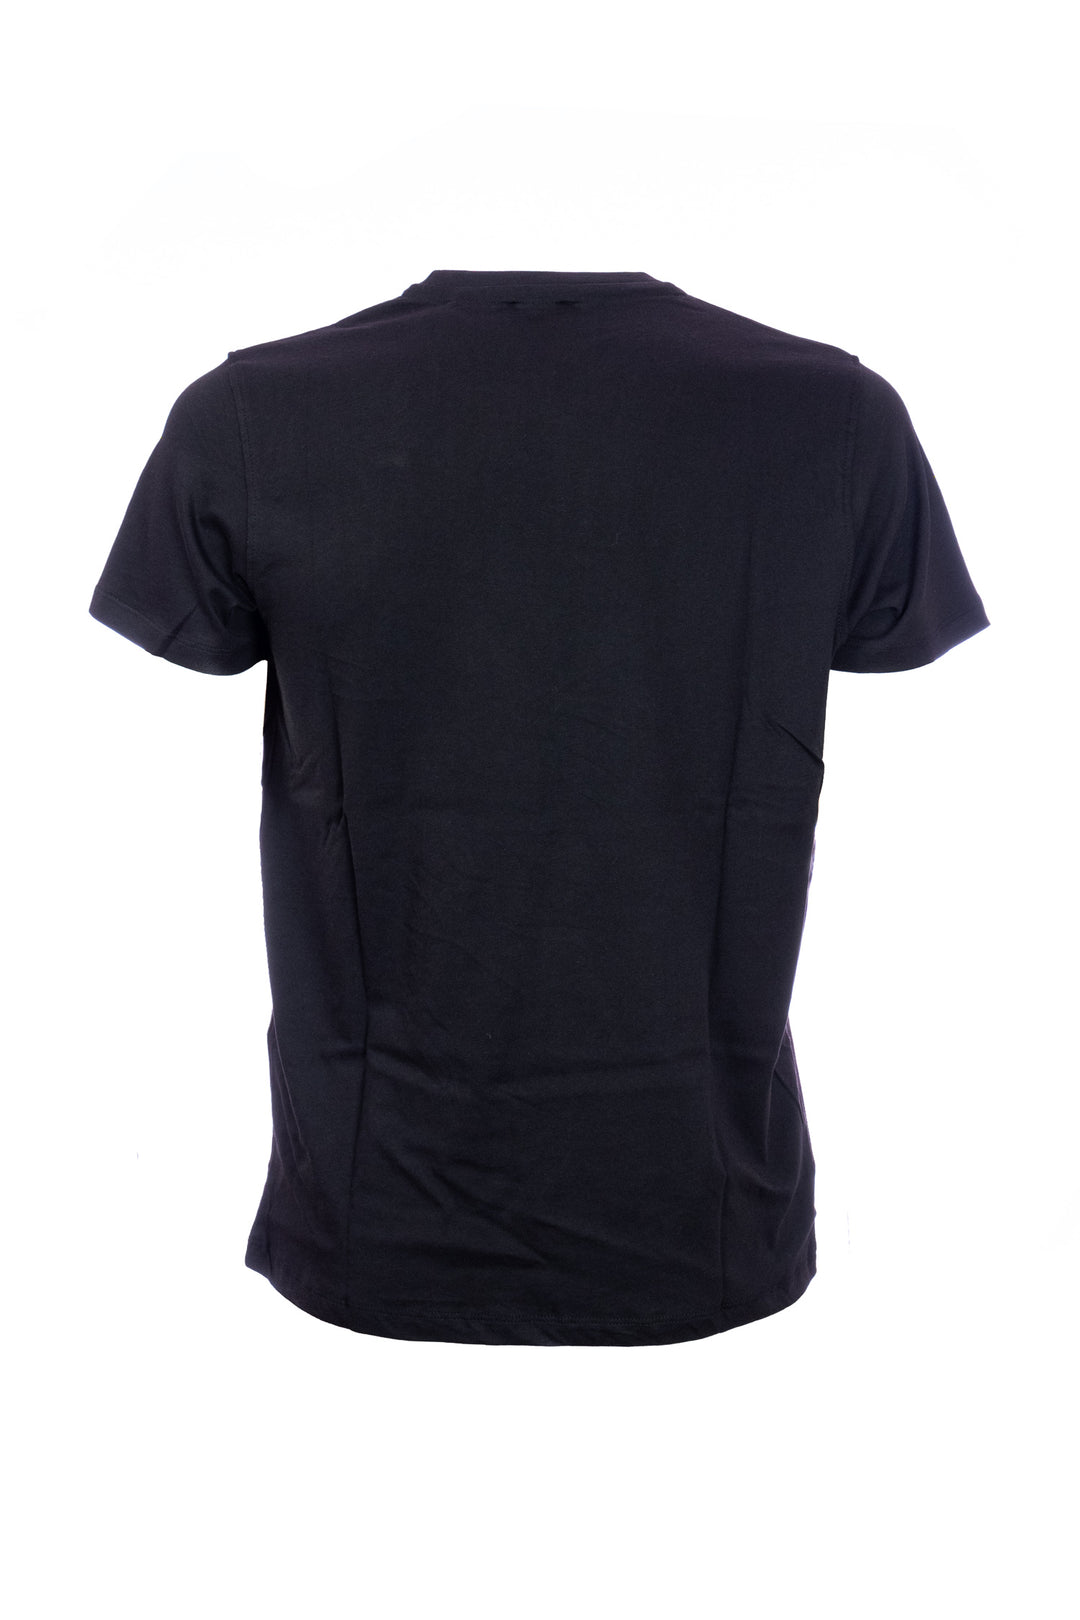 U.S. POLO ASSN. T-shirt nera in cotone con logo ricamato sul petto - Mancinelli 1954